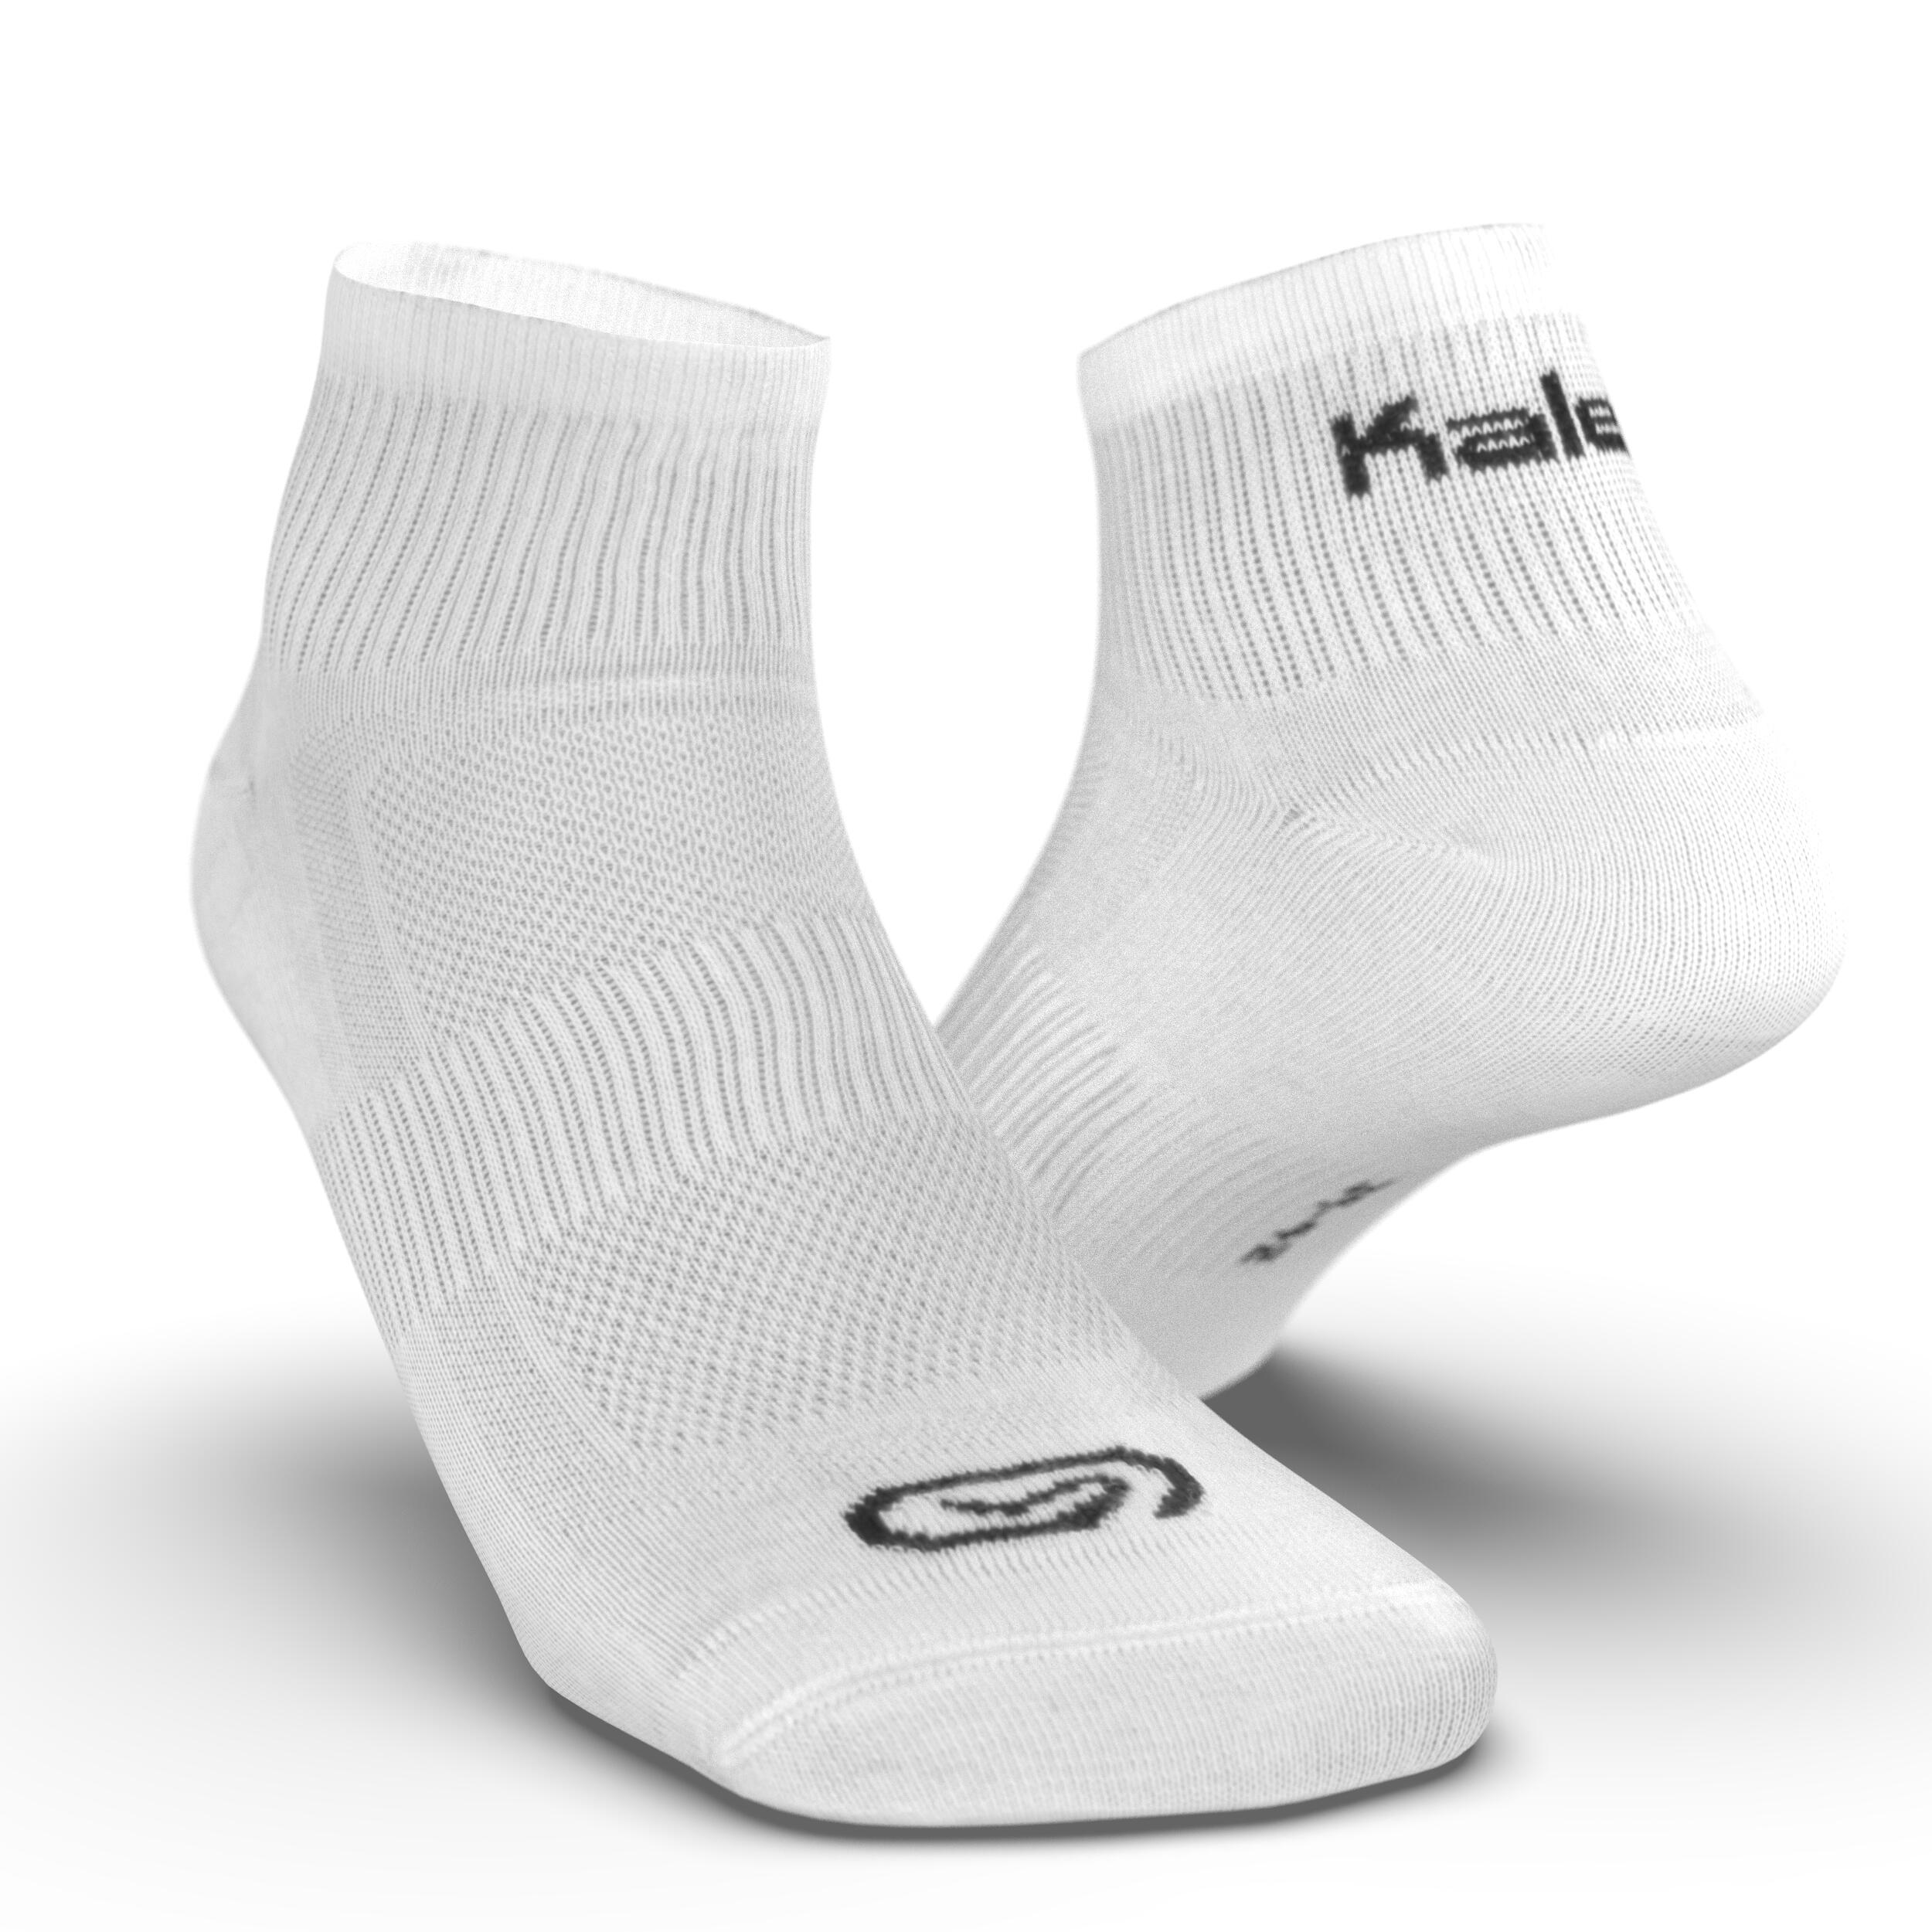 Unisex Sport Socks 3 Pack - White